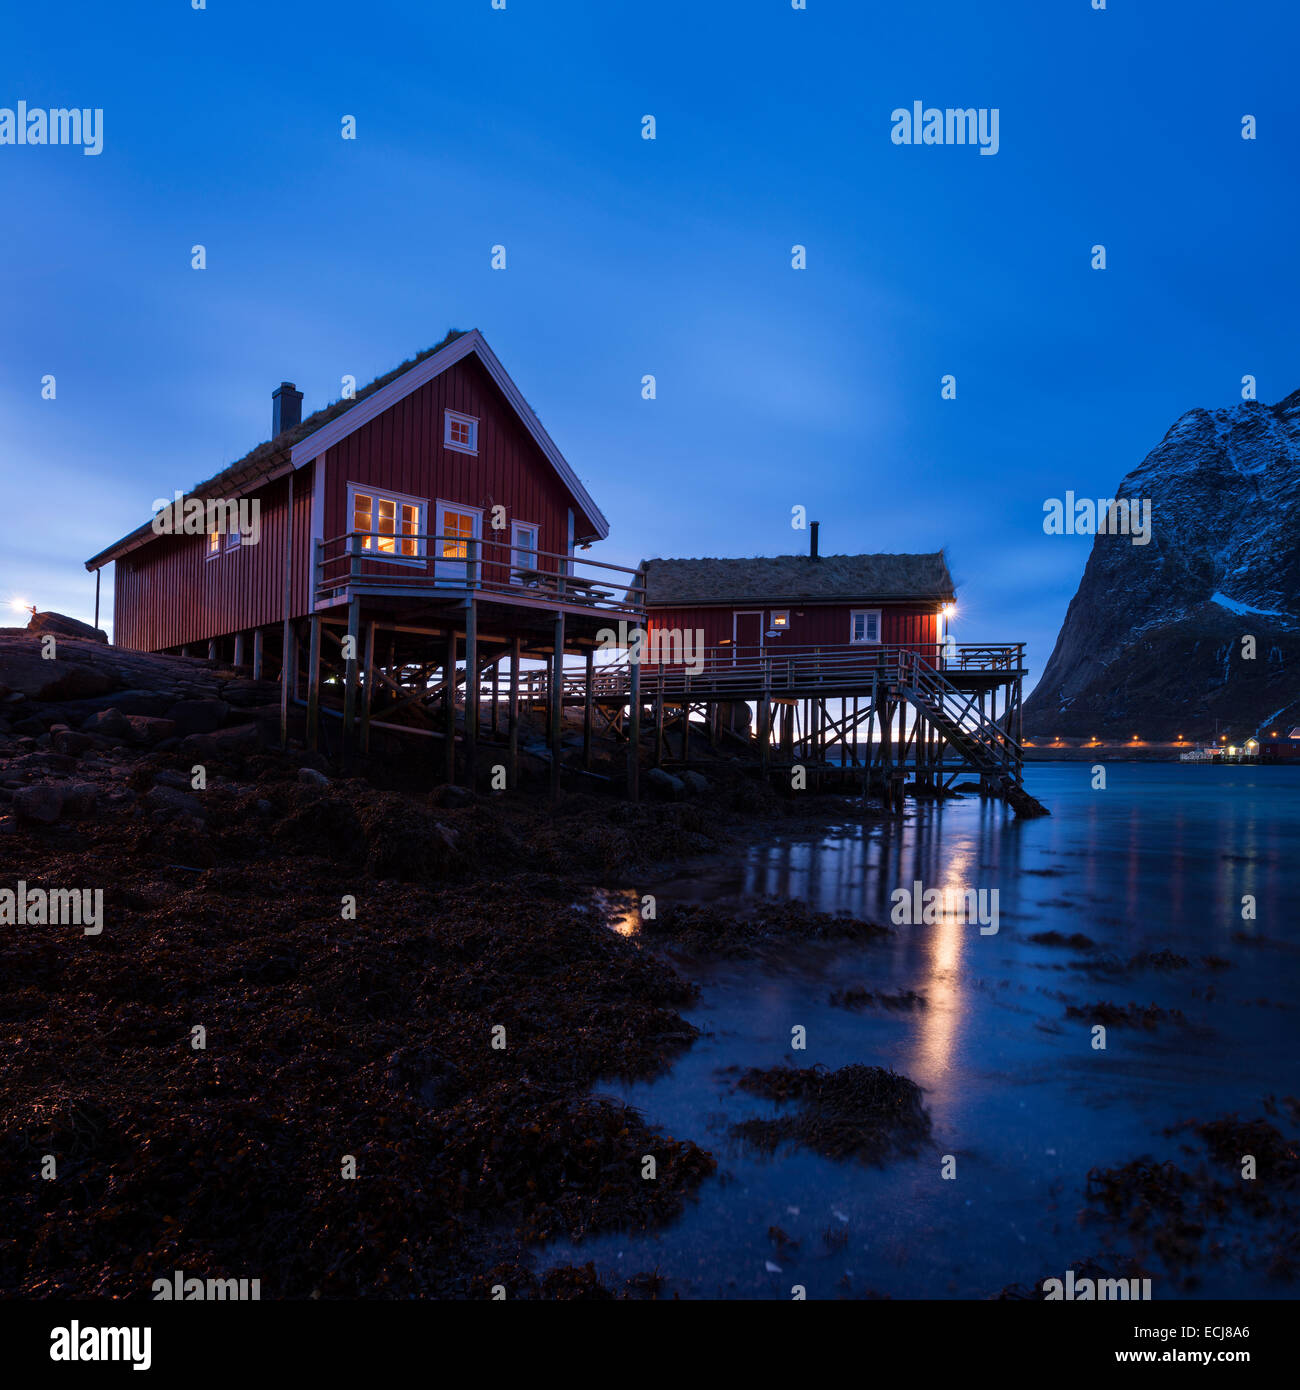 Cabines de pêcheurs traditionnels norvégiens - Rorbu, Valen, Reine, Moskenesøy, îles Lofoten, Norvège Banque D'Images